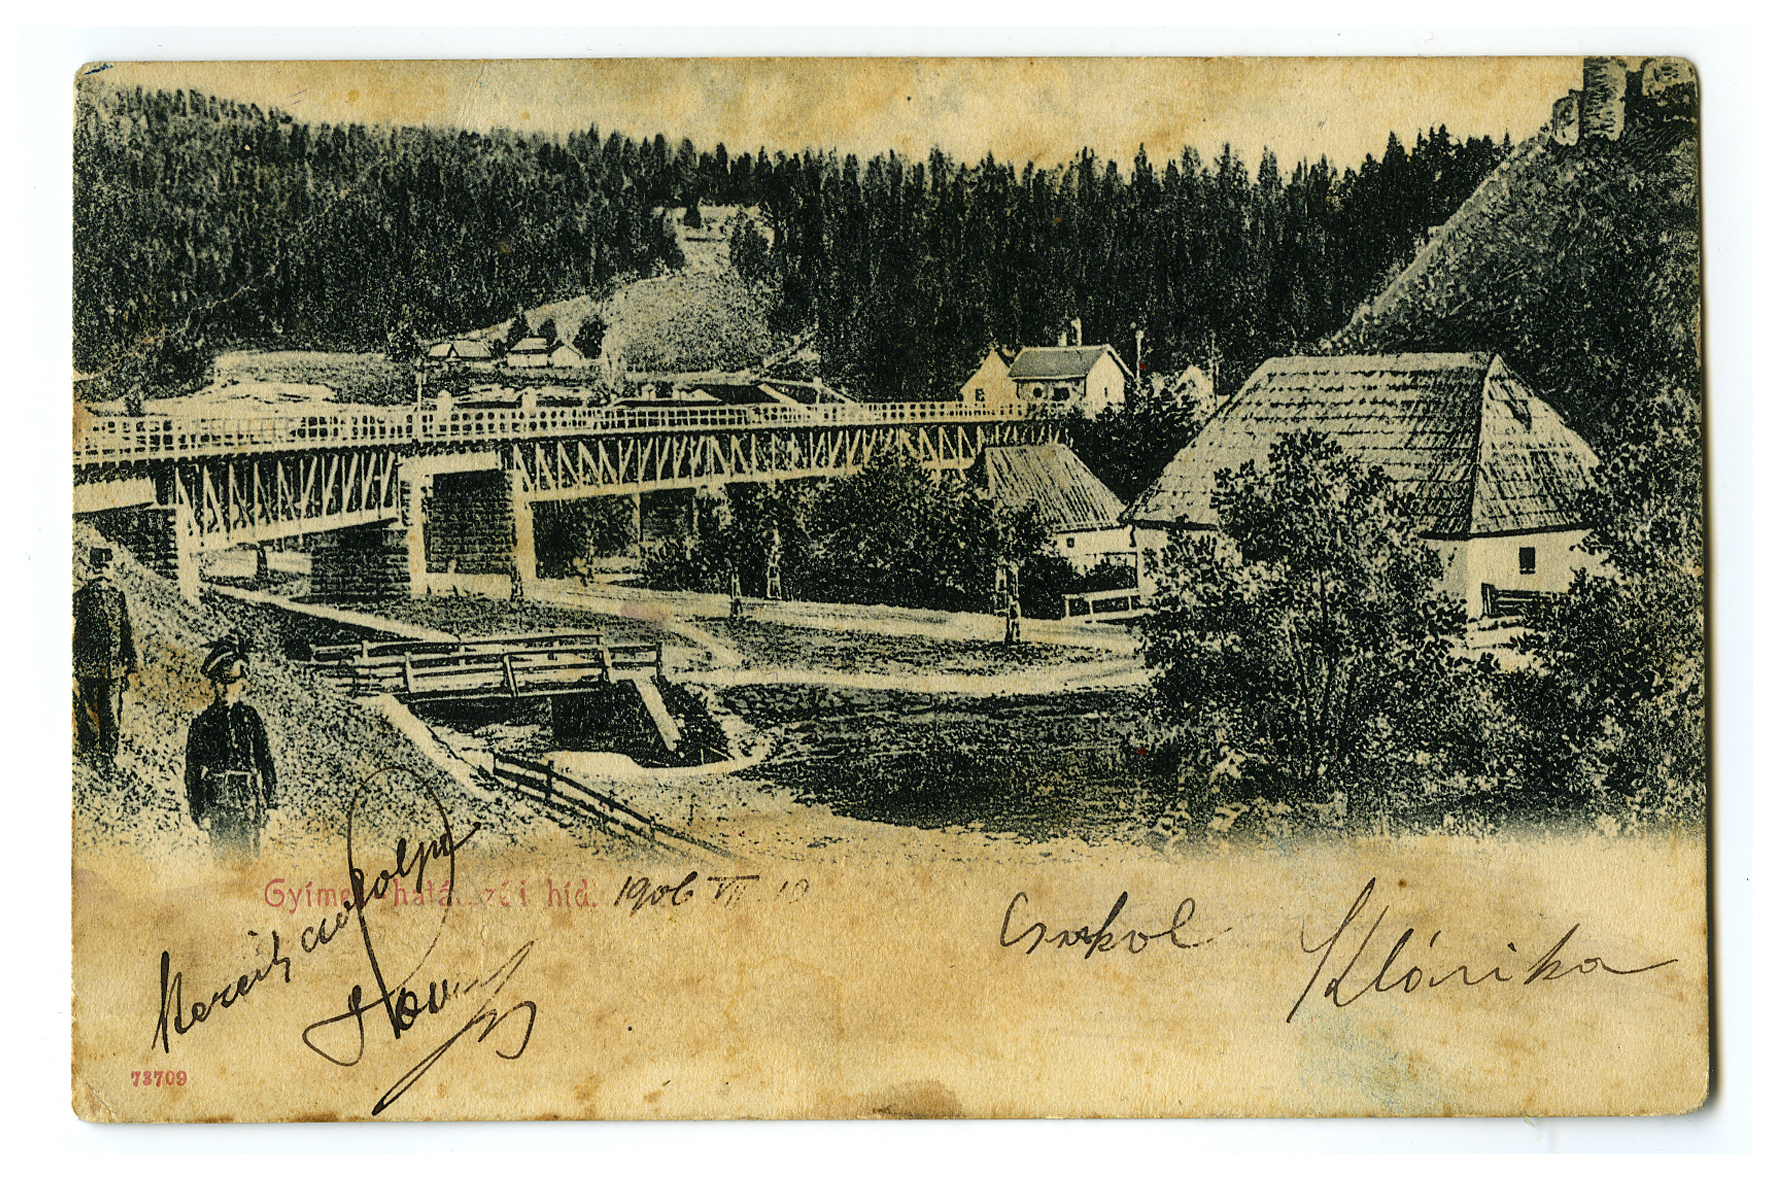 A gyimesi országhatár az előző századfordulóról származó képes levelezőlapokon. A fotóértékű képeslapok kora akkor kezdődött, amikor az írható szöveg is a hátlapra került, amelyen addig csak címezni lehetett. A fotóreprodukciót a lapokat forgalmazó fényképészek és nyomdászok később kézimunkával ki is színezték (Kubinszky Mihály gyűjteménye)